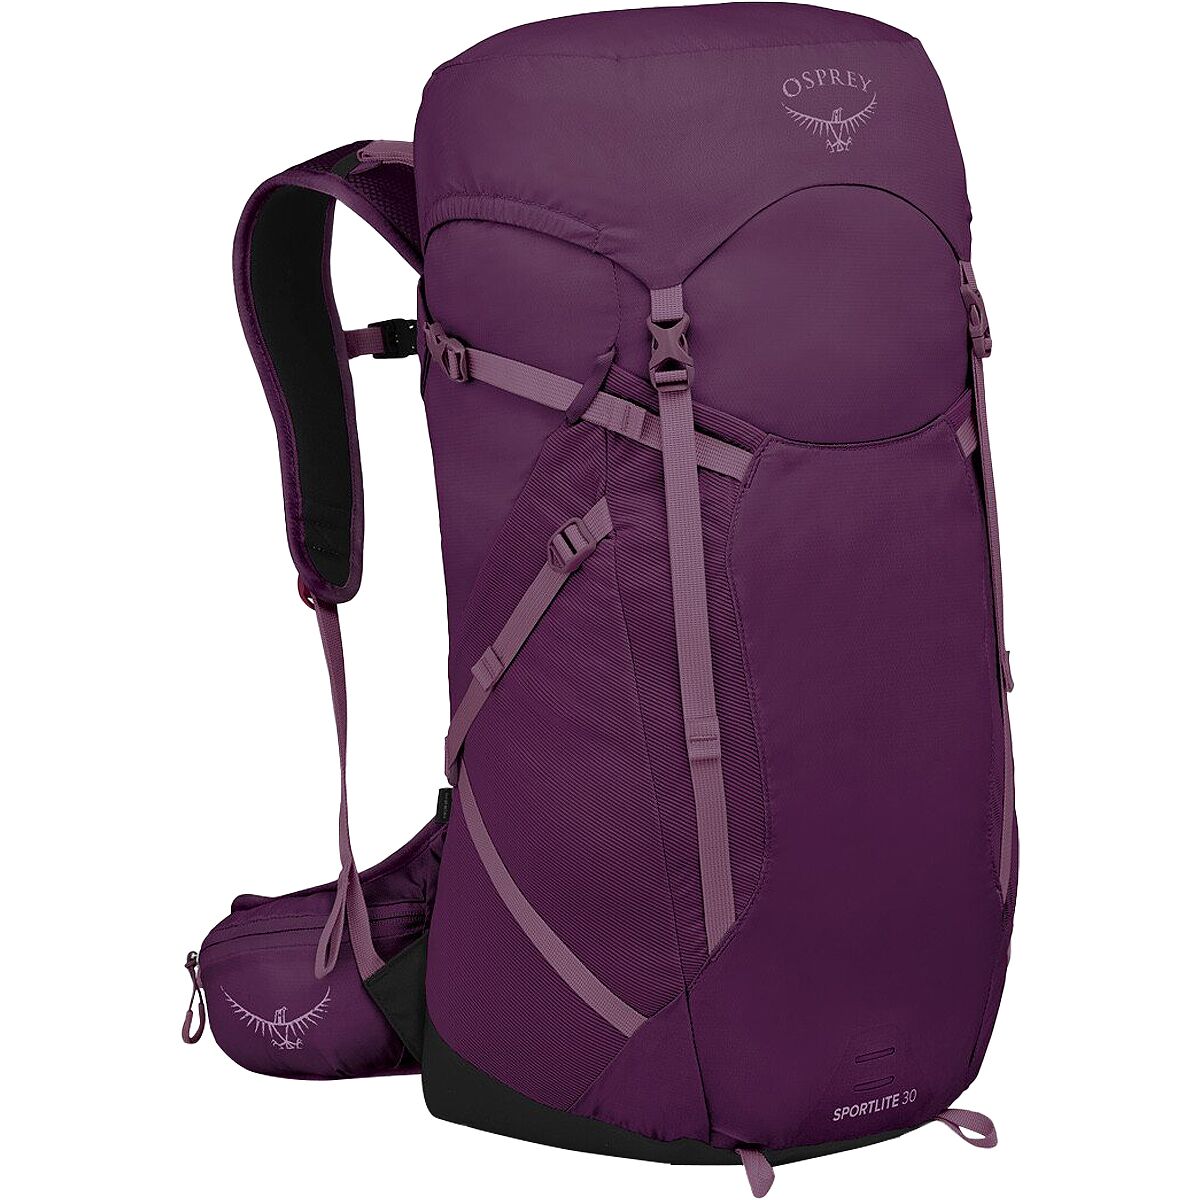 Osprey Packs Sportlite 30 Backpack